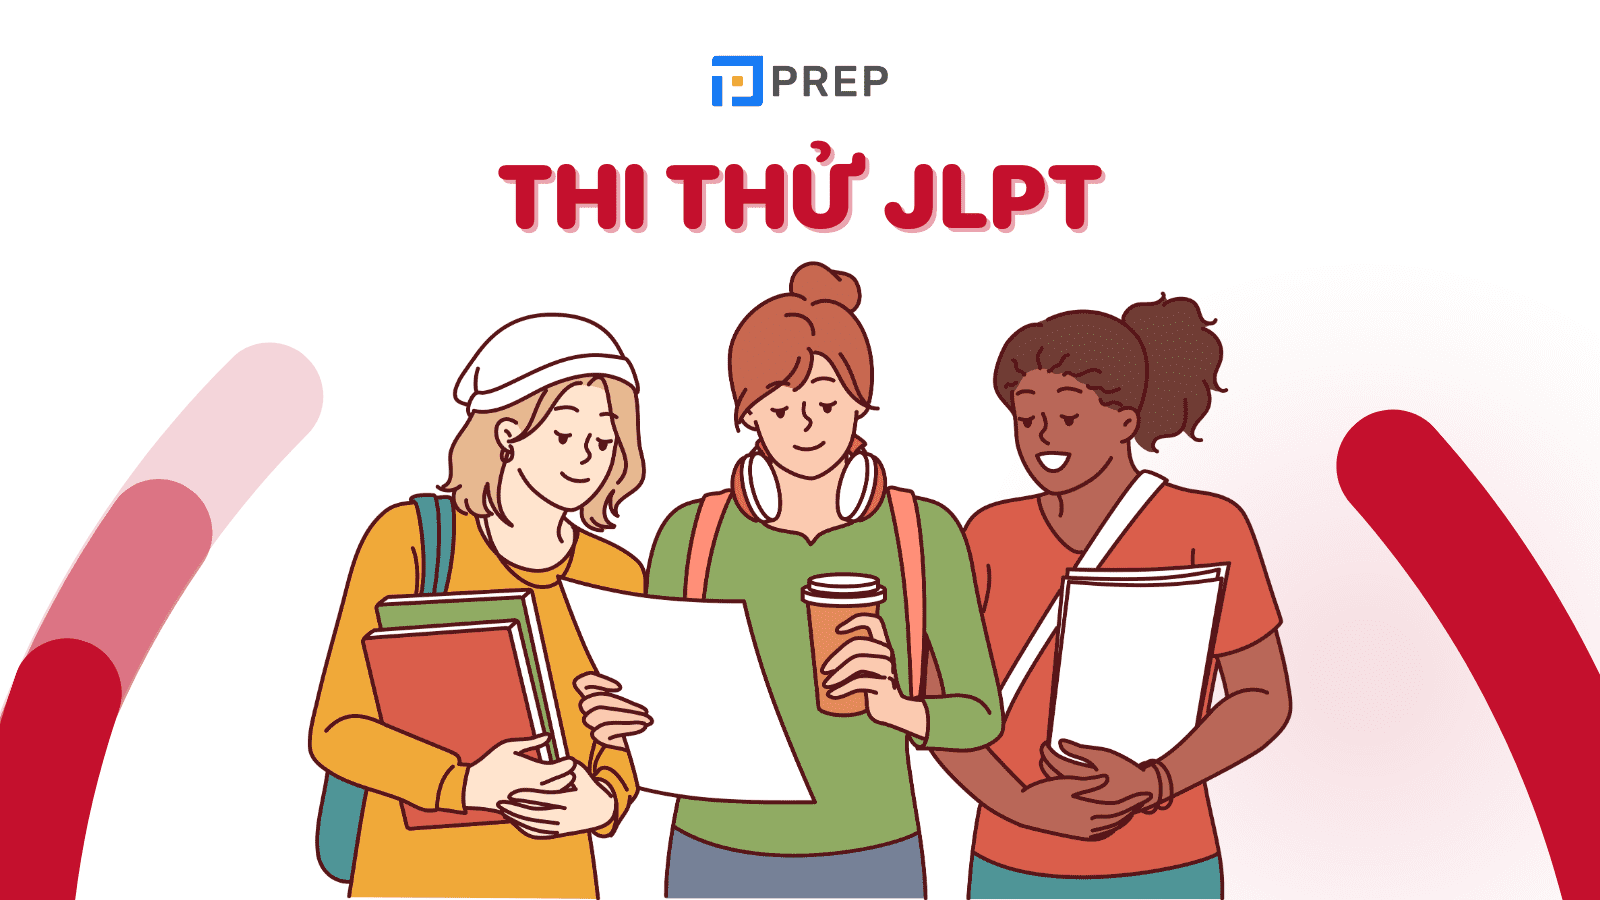 Lợi ích khi thi thử JLPT là gì? Tổng hợp nguồn thi thử JLPT uy tín